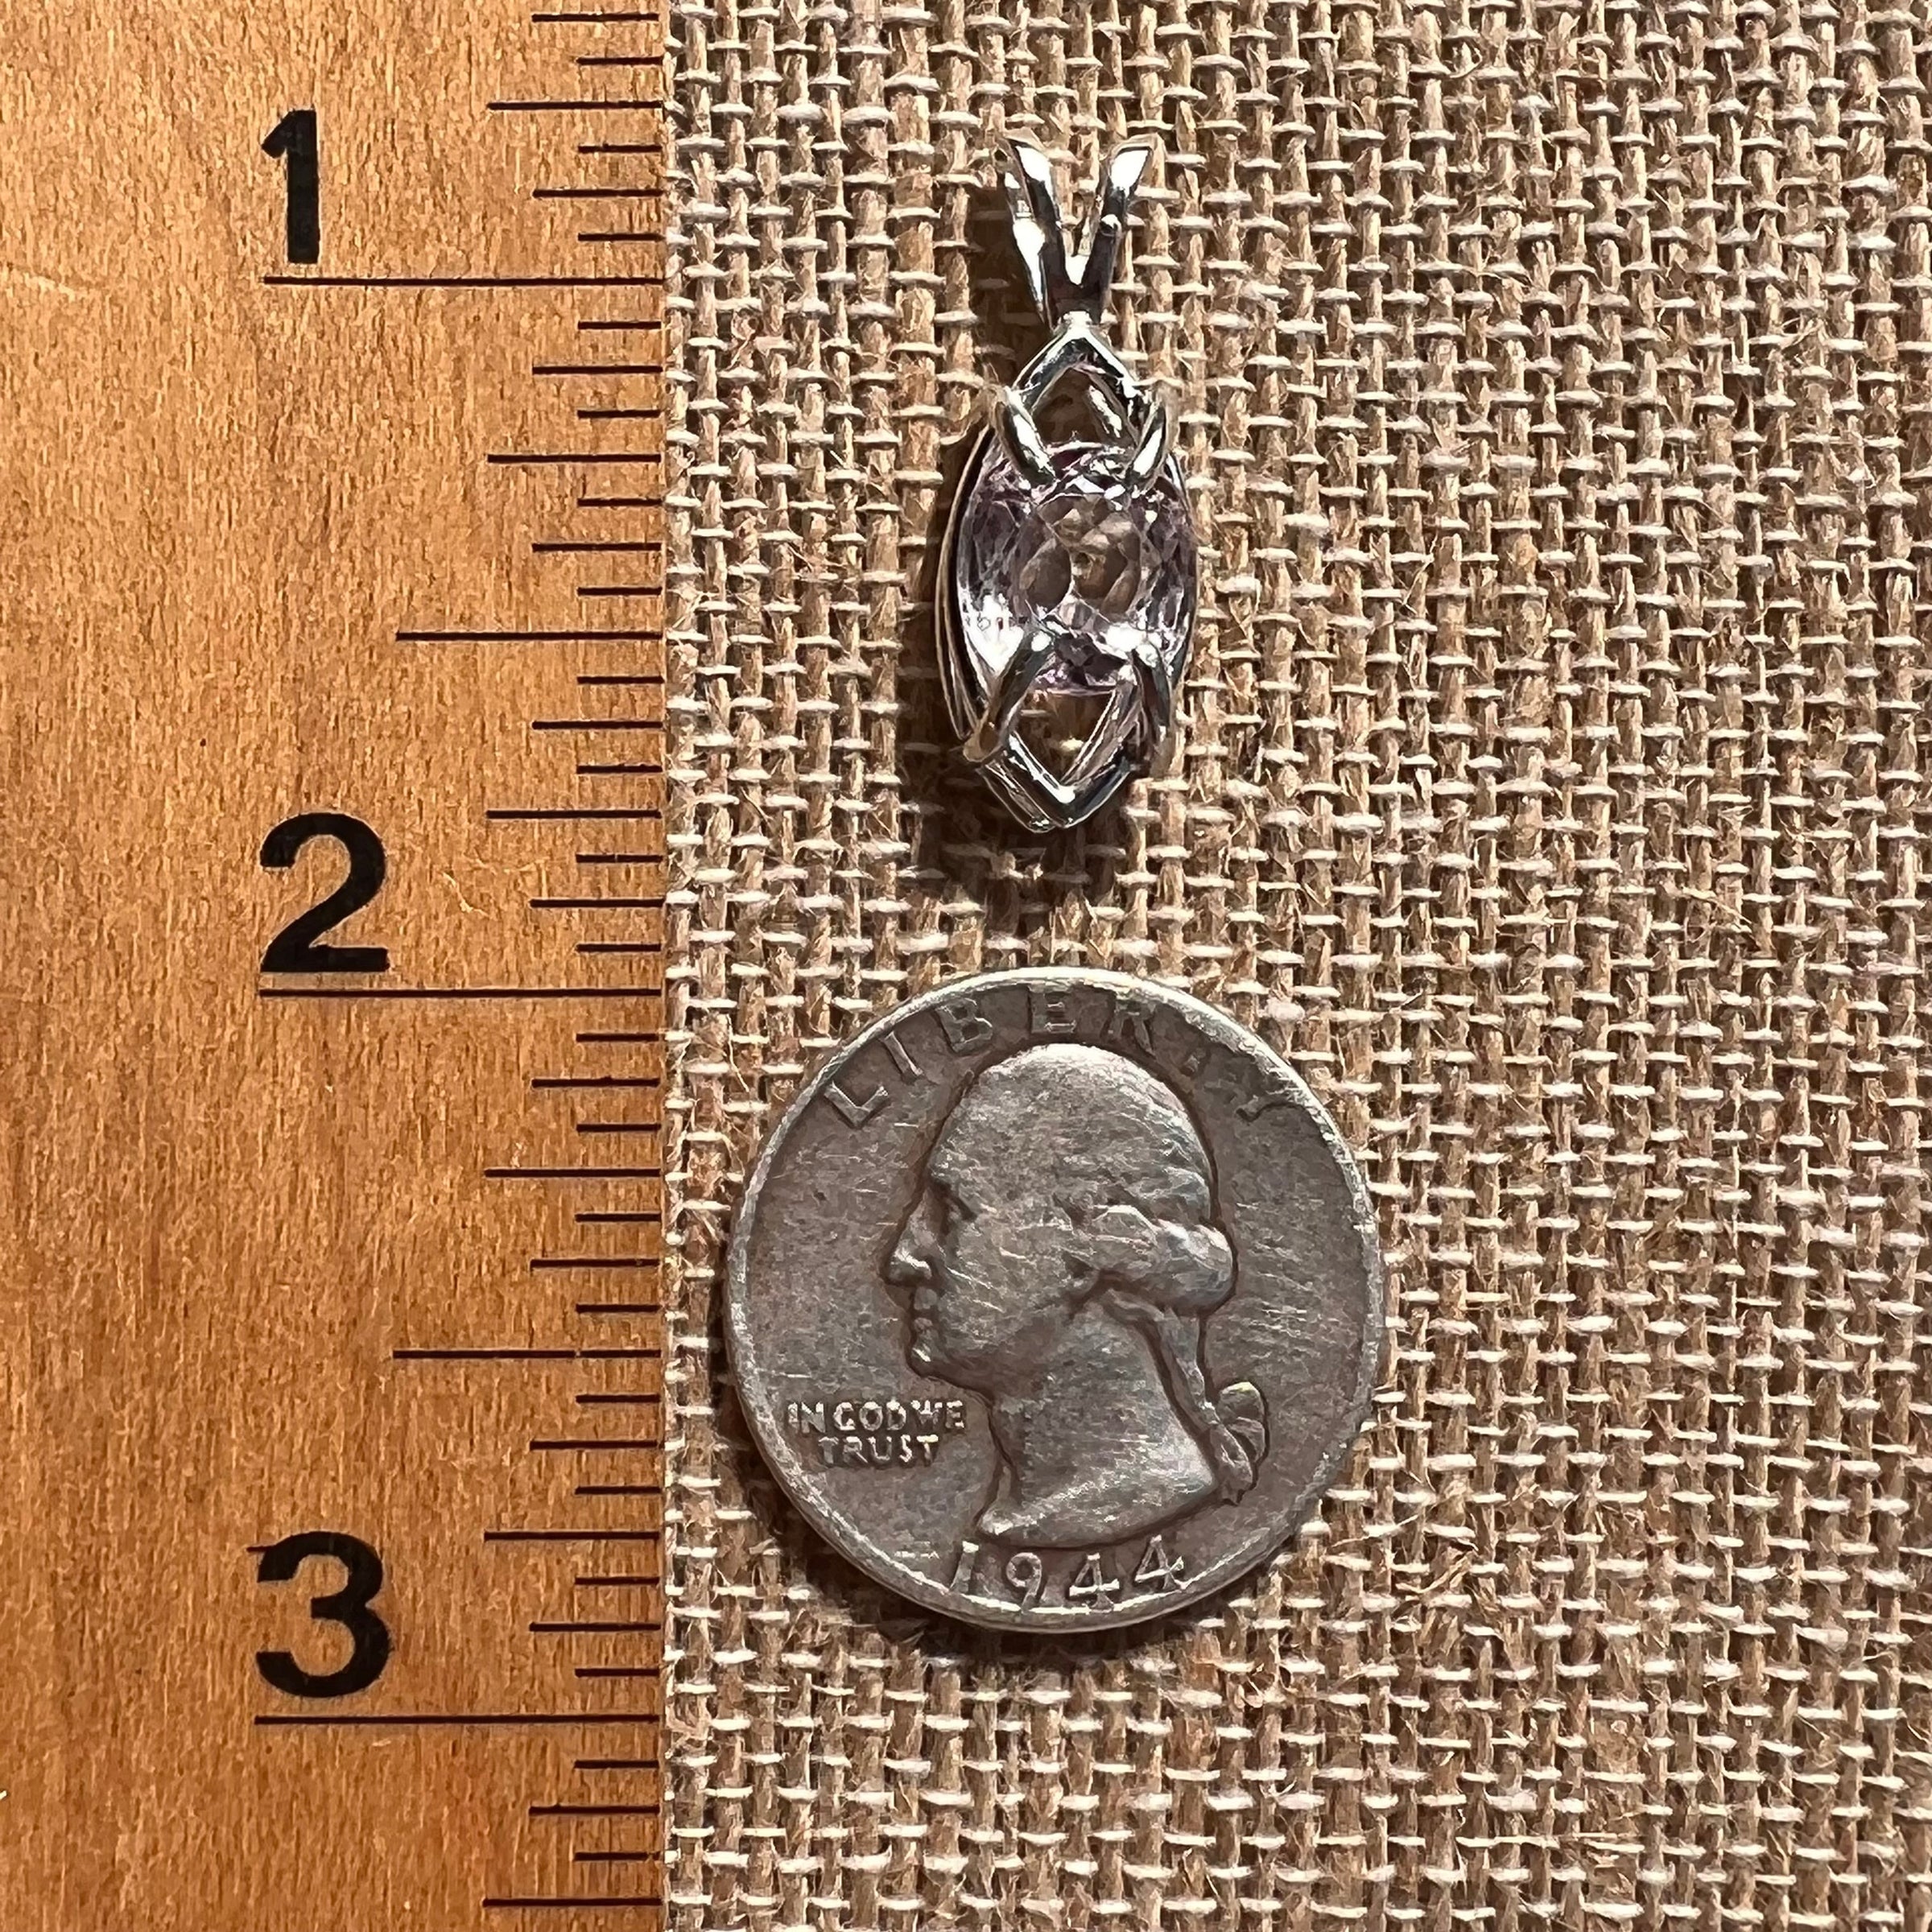 Faceted Kunzite Pendant Sterling Silver #2620-Moldavite Life